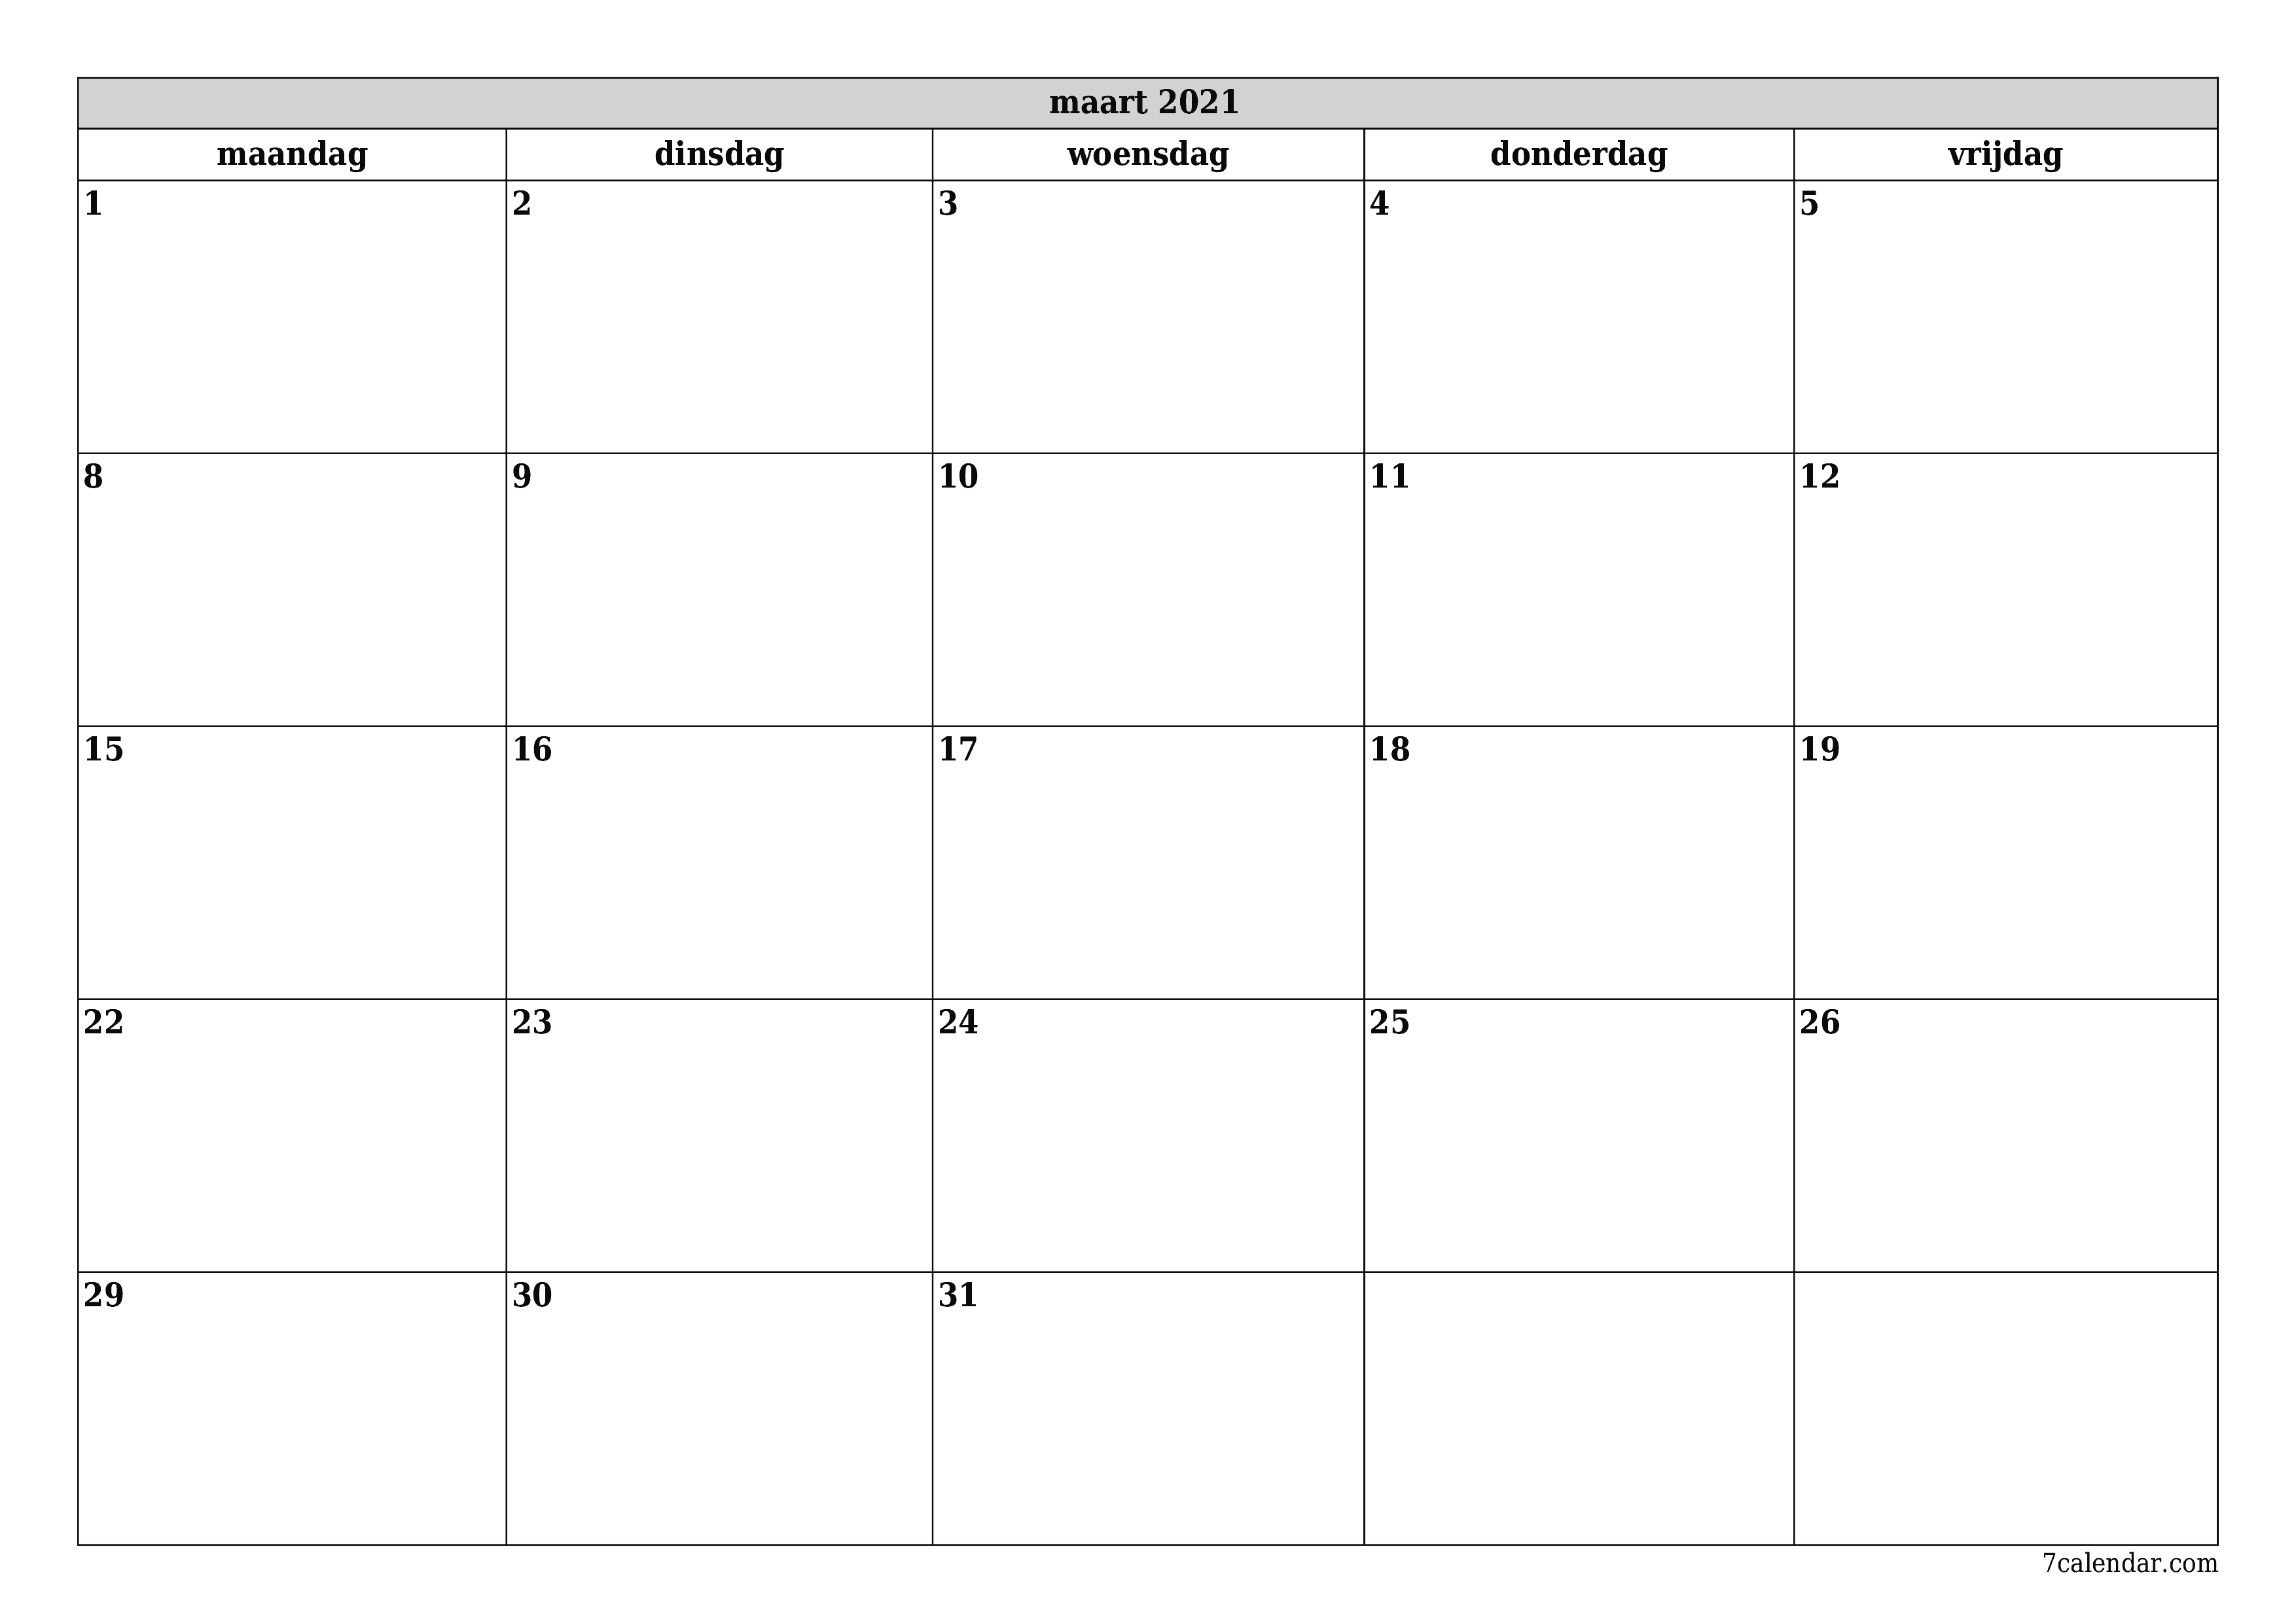 Lege maandplanner voor maand maart 2021 met notities, opslaan en afdrukken naar pdf PNG Dutch